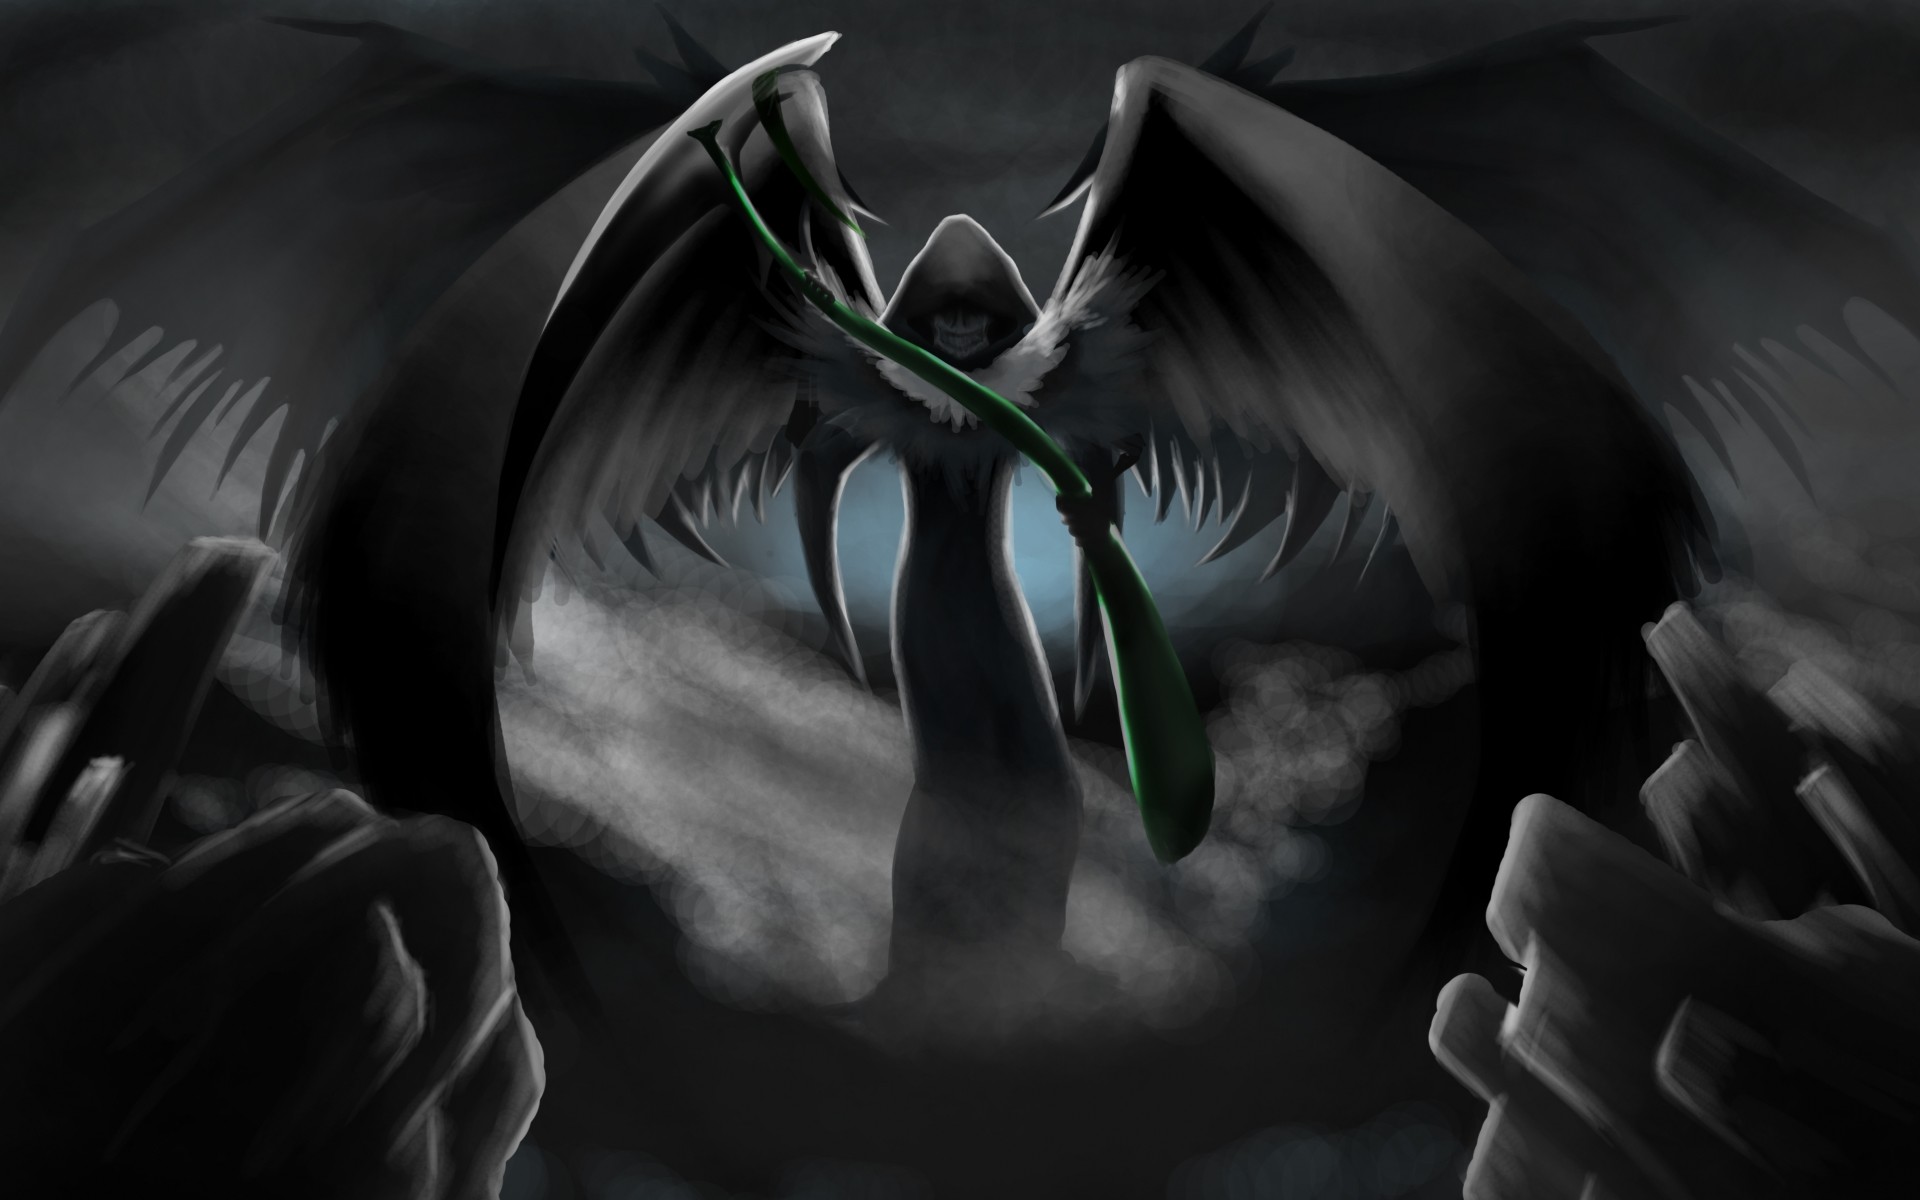 Grim Reaper With Wings Wallpaper, Wallpaper, Grim Reaper - Grim Reaper Anime  Art - 1920x1200 Wallpaper 